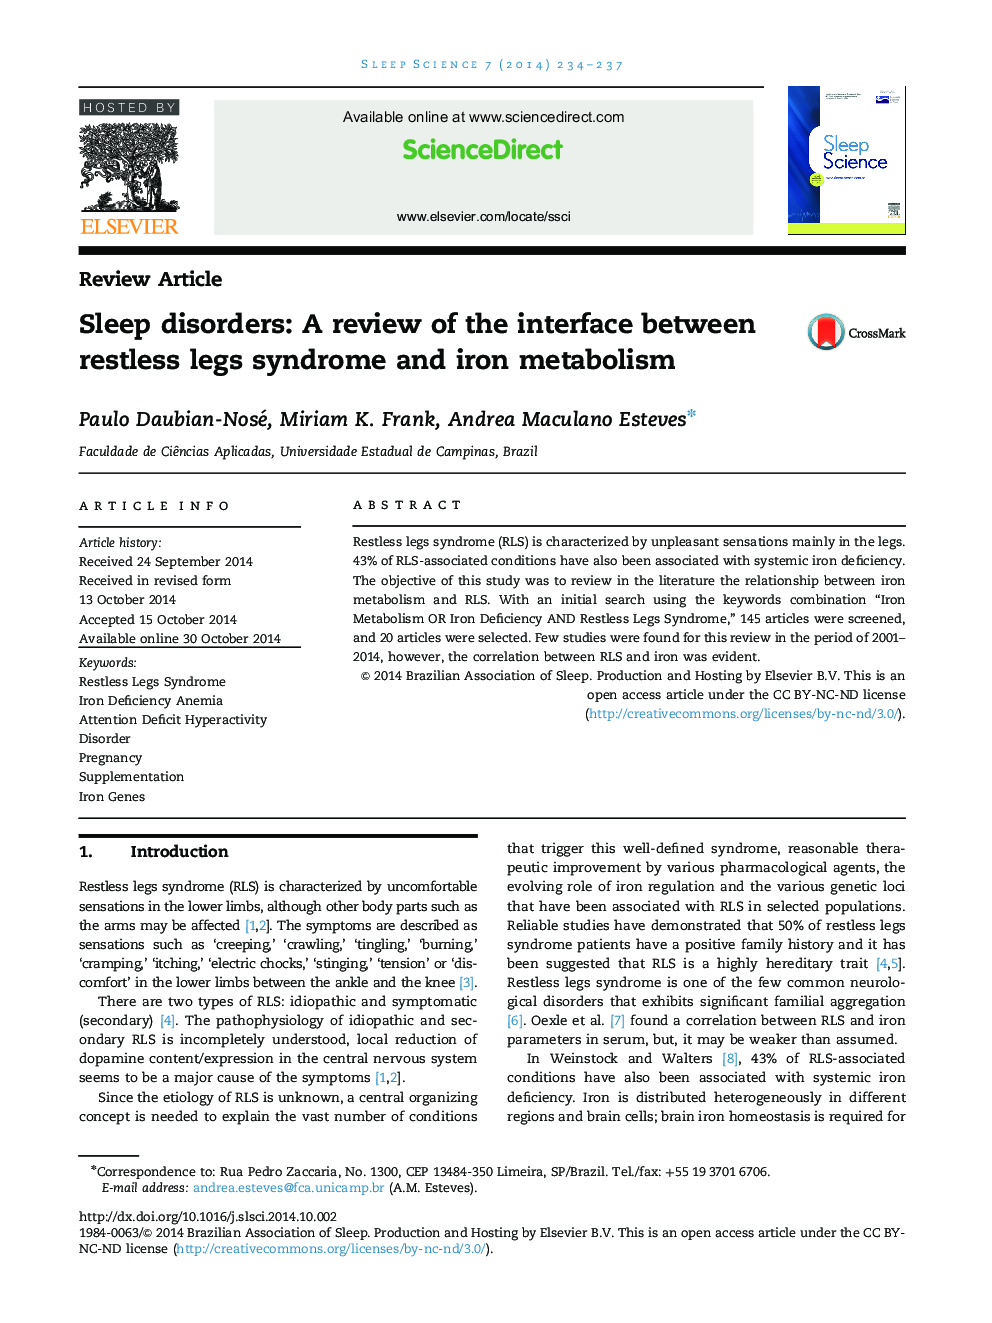 اختلالات خواب: بررسی رابط بین سندرم پاهای بی قرار و متابولیسم آهن 